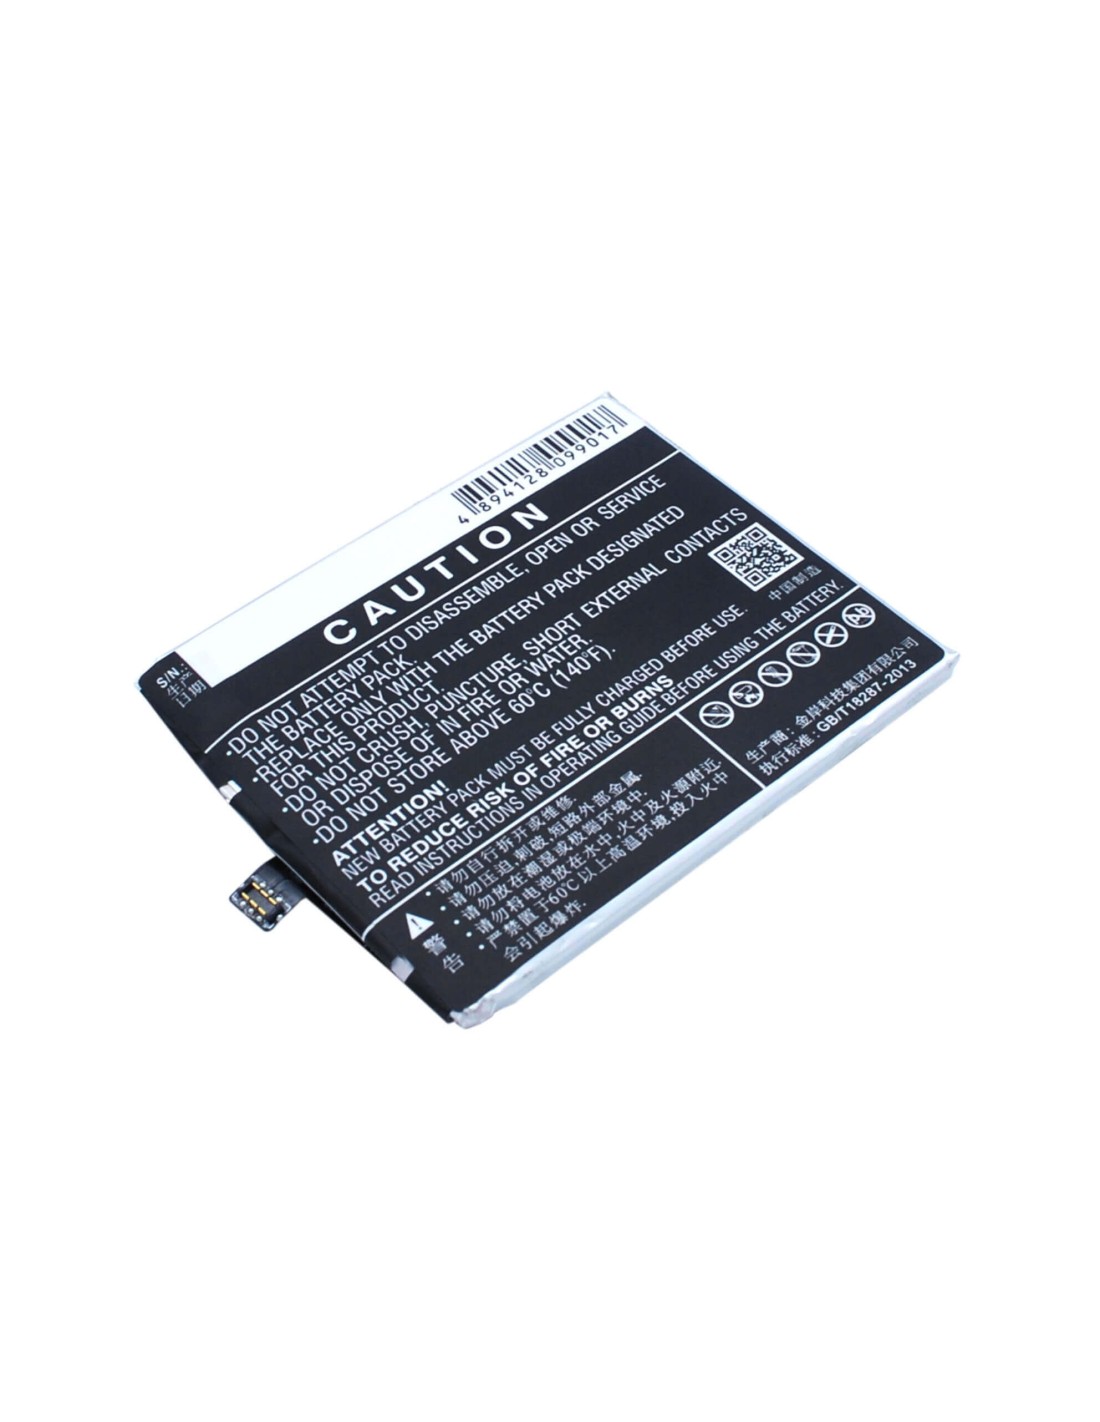 Battery for Meizu MX4 Pro, MX4SWDS0, M462U 3.8V, 3350mAh - 12.73Wh